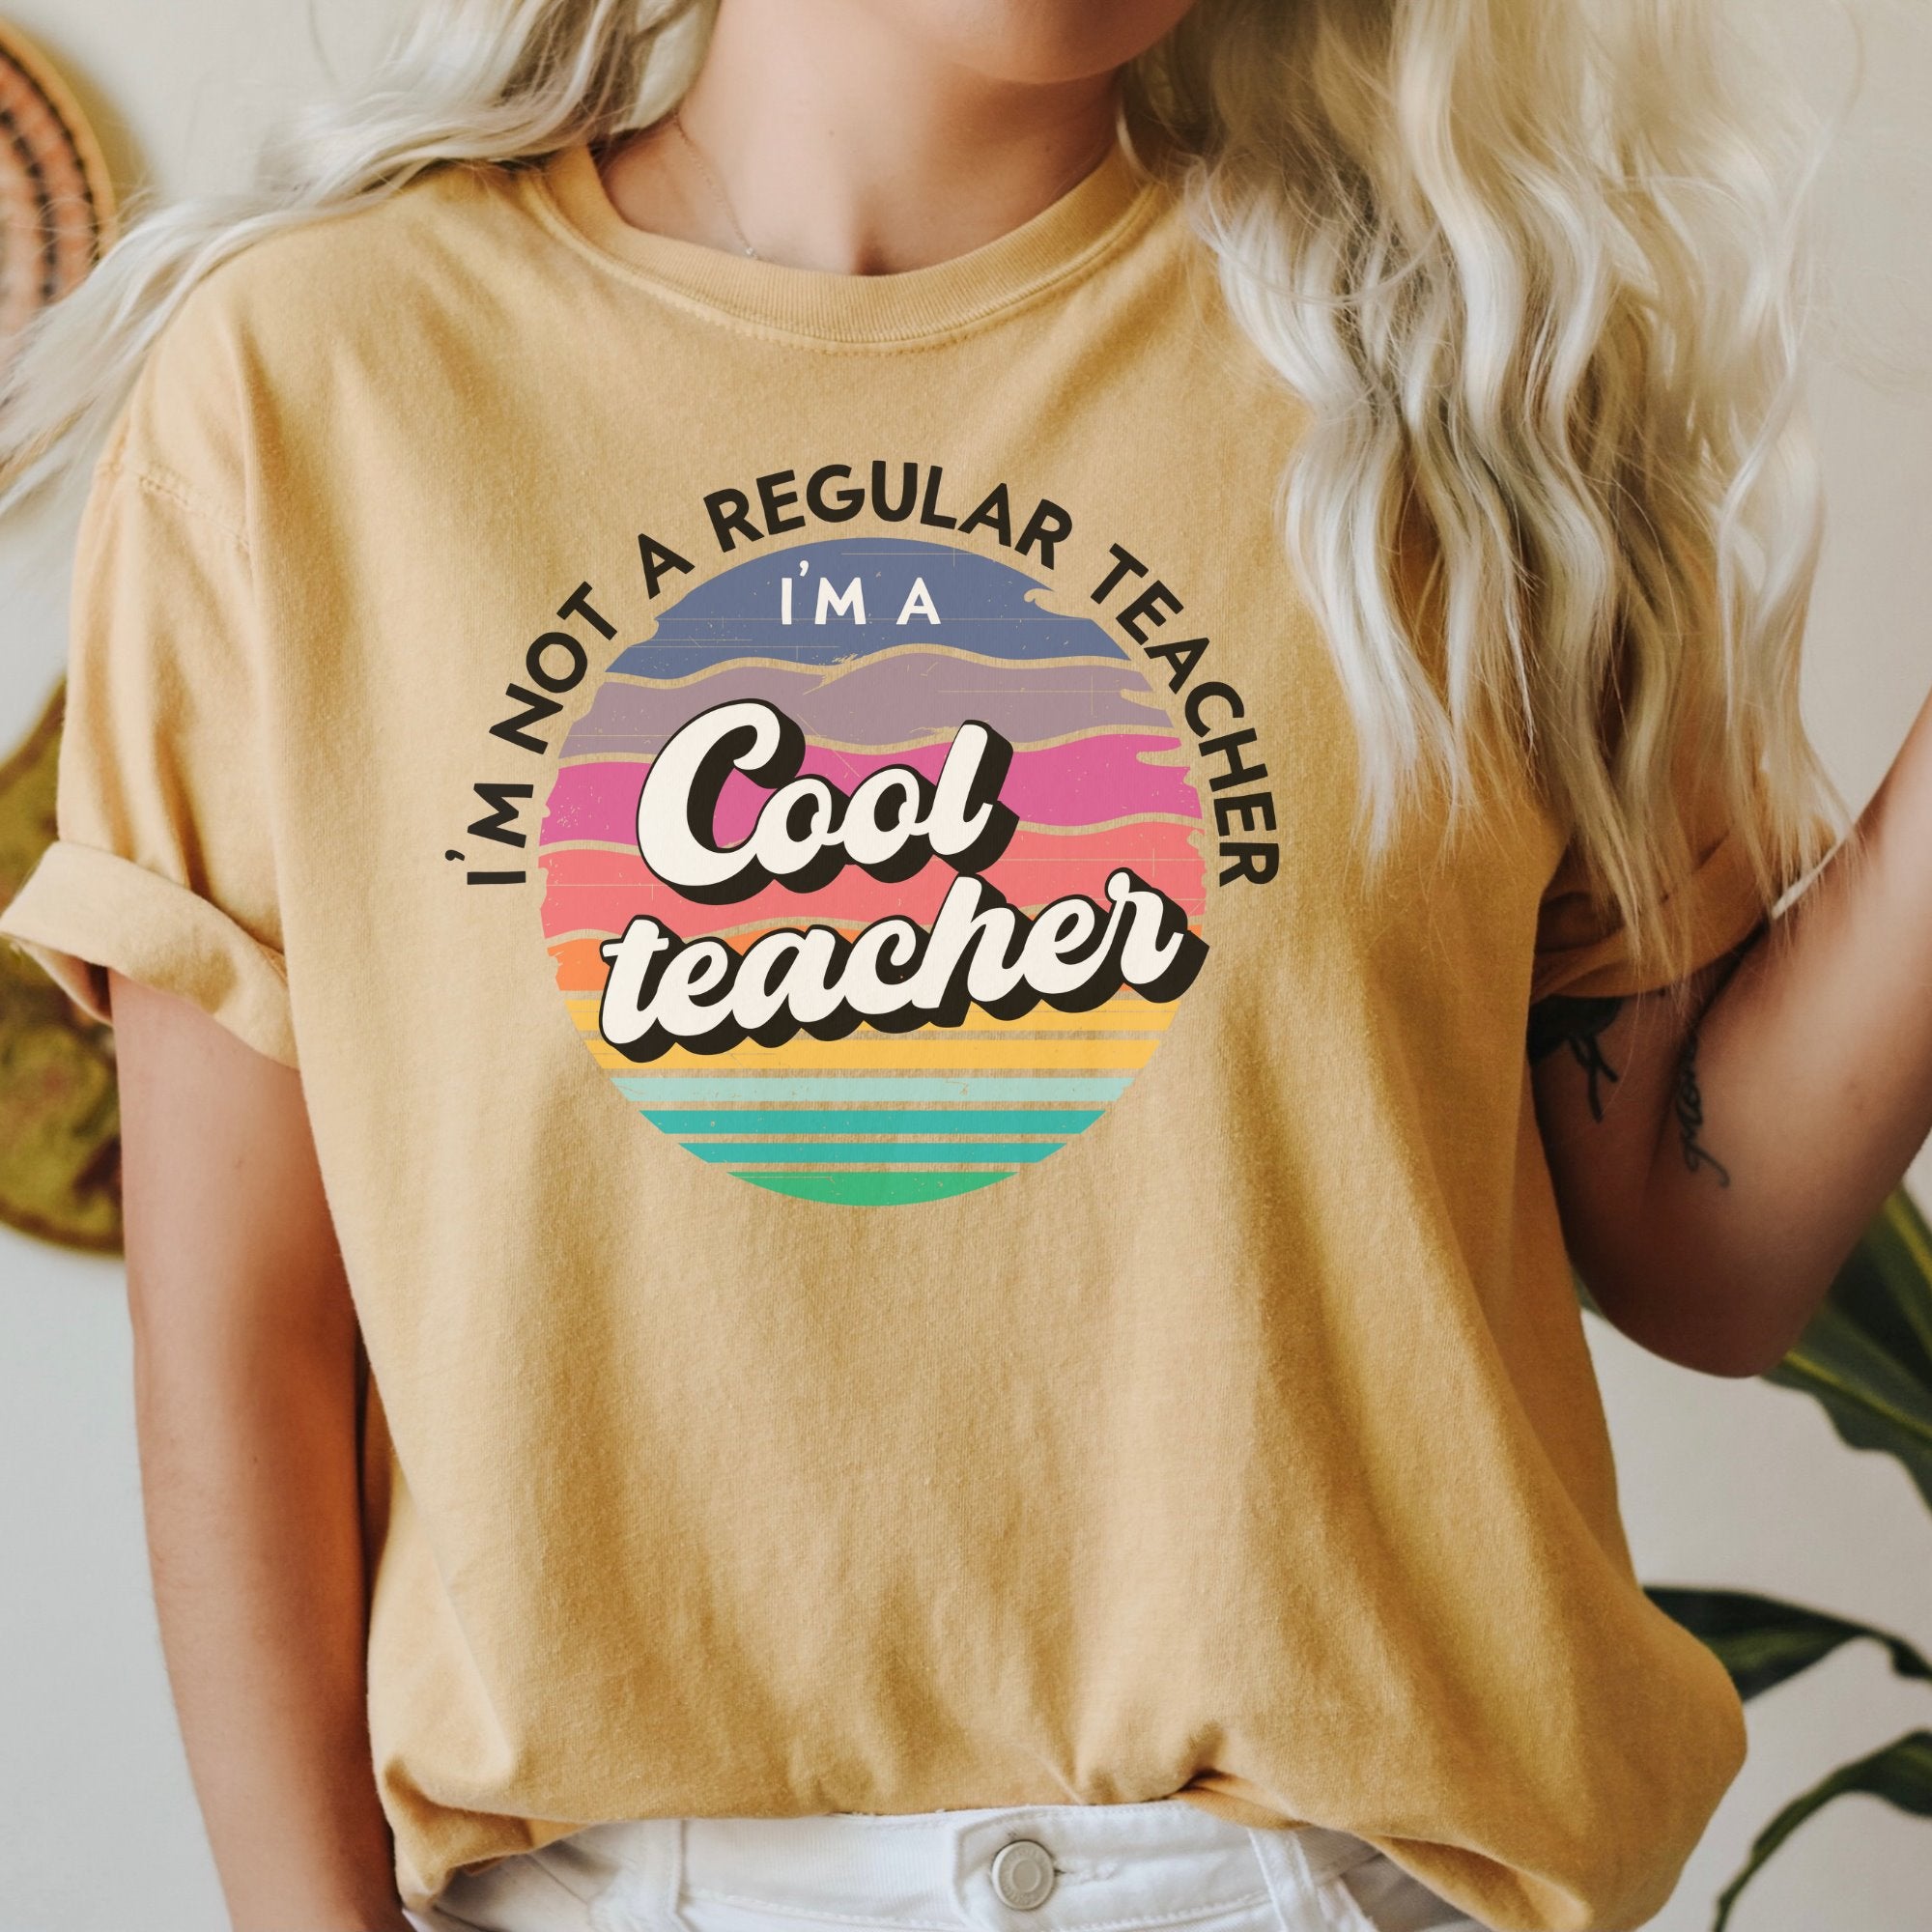 I'm not a regular teacher, I'm a cool teacher Printify